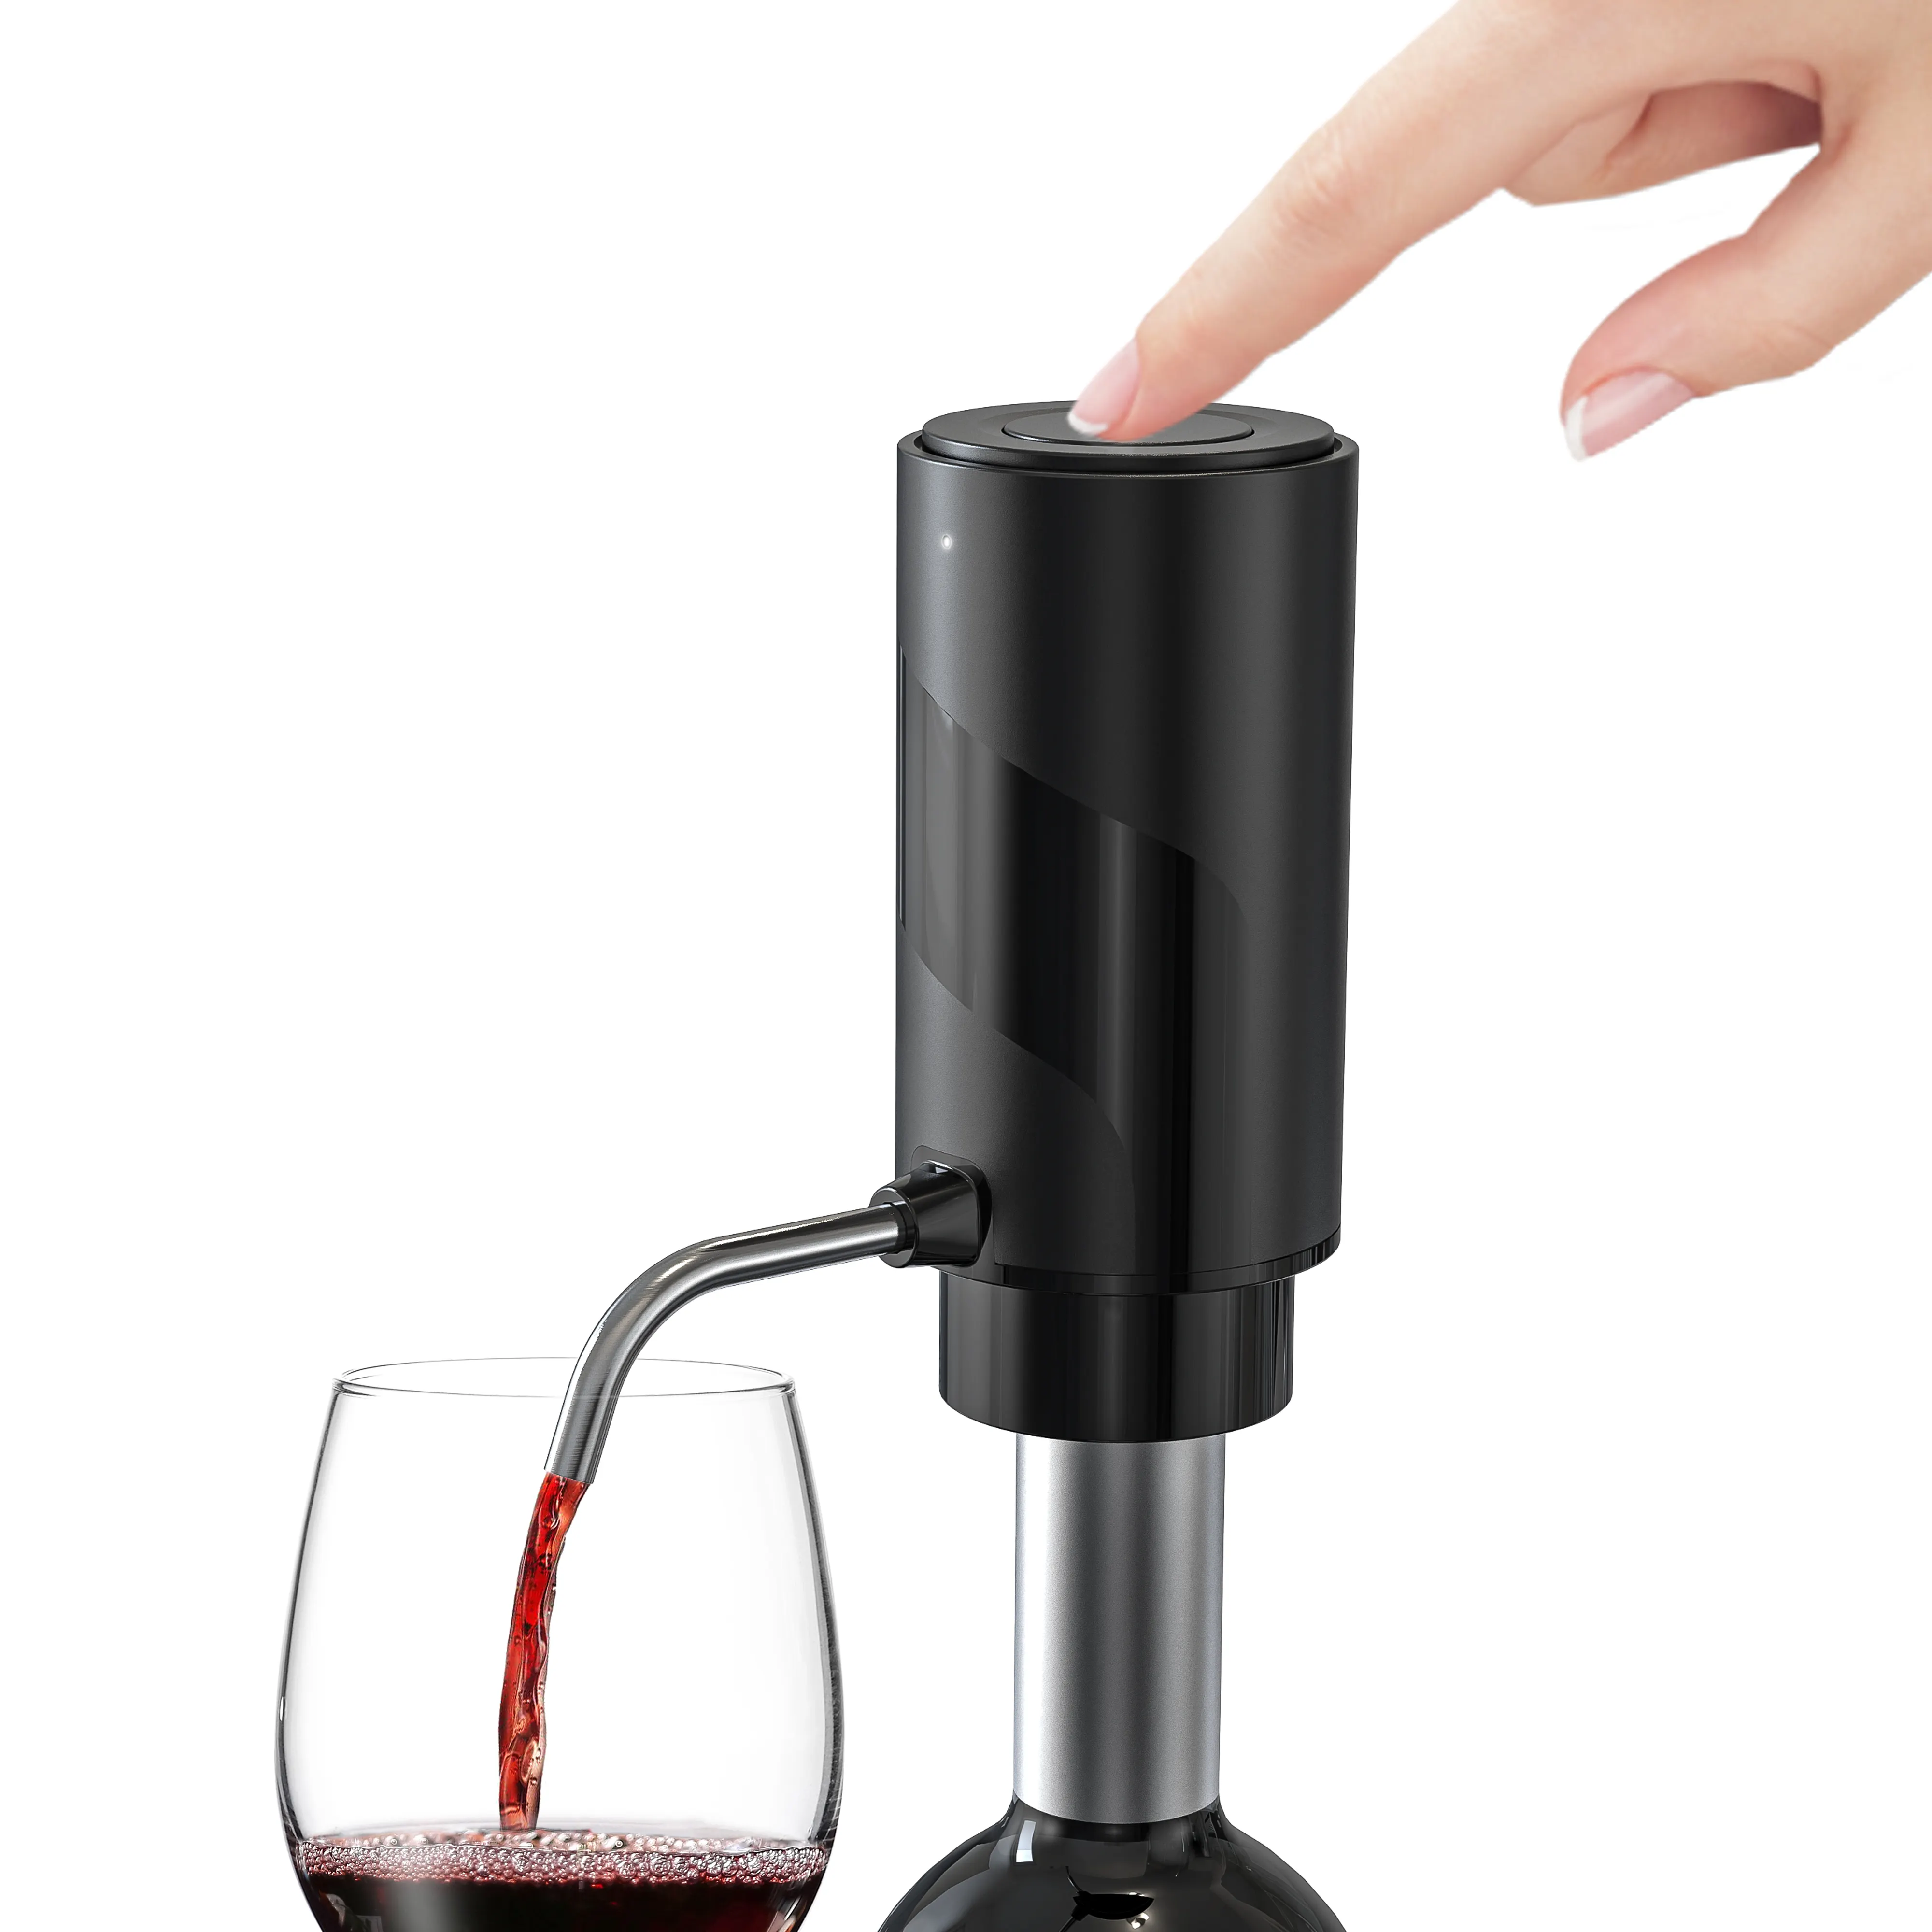 ขายร้อนขวดไวน์แดงPourer Air Aeratorแบบพกพาขวดเหล้าPourerและQuickขวดเหล้าPoutไวน์Aerator Pourer